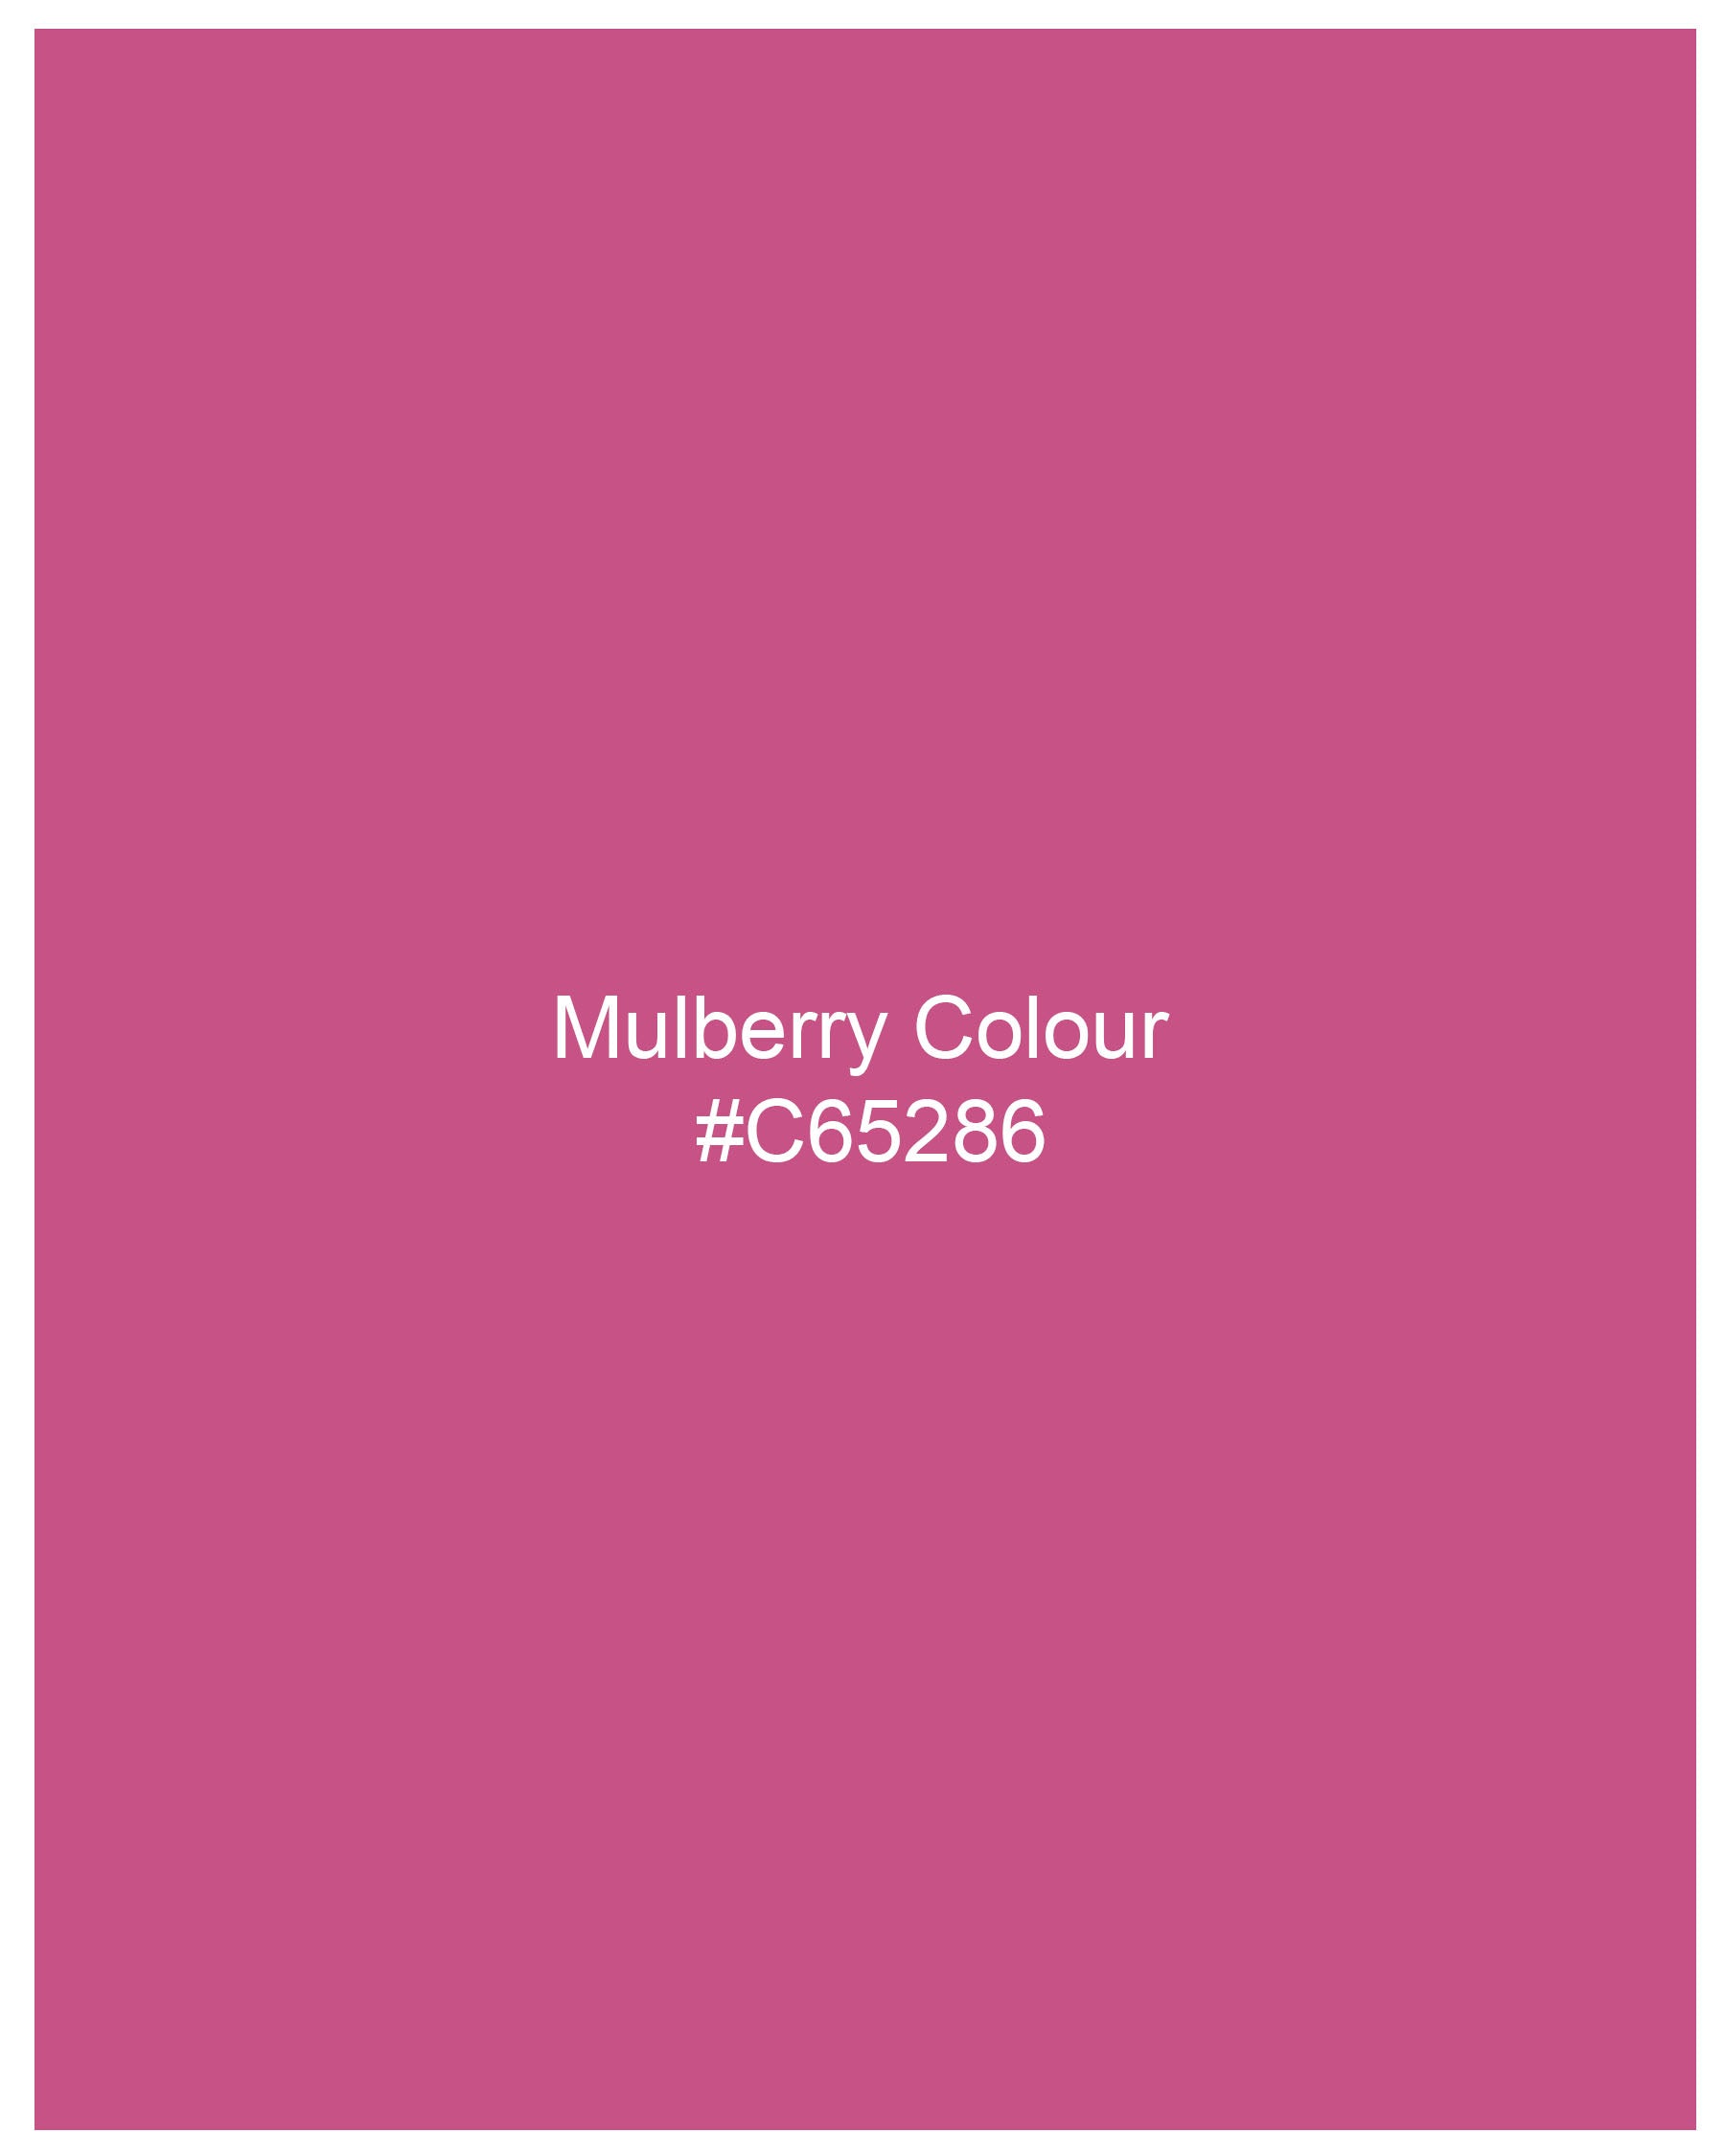 Mulberry Pink Luxurious Linen Shirt 8096-MN-38, 8096-MN-H-38, 8096-MN-39, 8096-MN-H-39, 8096-MN-40, 8096-MN-H-40, 8096-MN-42, 8096-MN-H-42, 8096-MN-44, 8096-MN-H-44, 8096-MN-46, 8096-MN-H-46, 8096-MN-48, 8096-MN-H-48, 8096-MN-50, 8096-MN-H-50, 8096-MN-52, 8096-MN-H-52